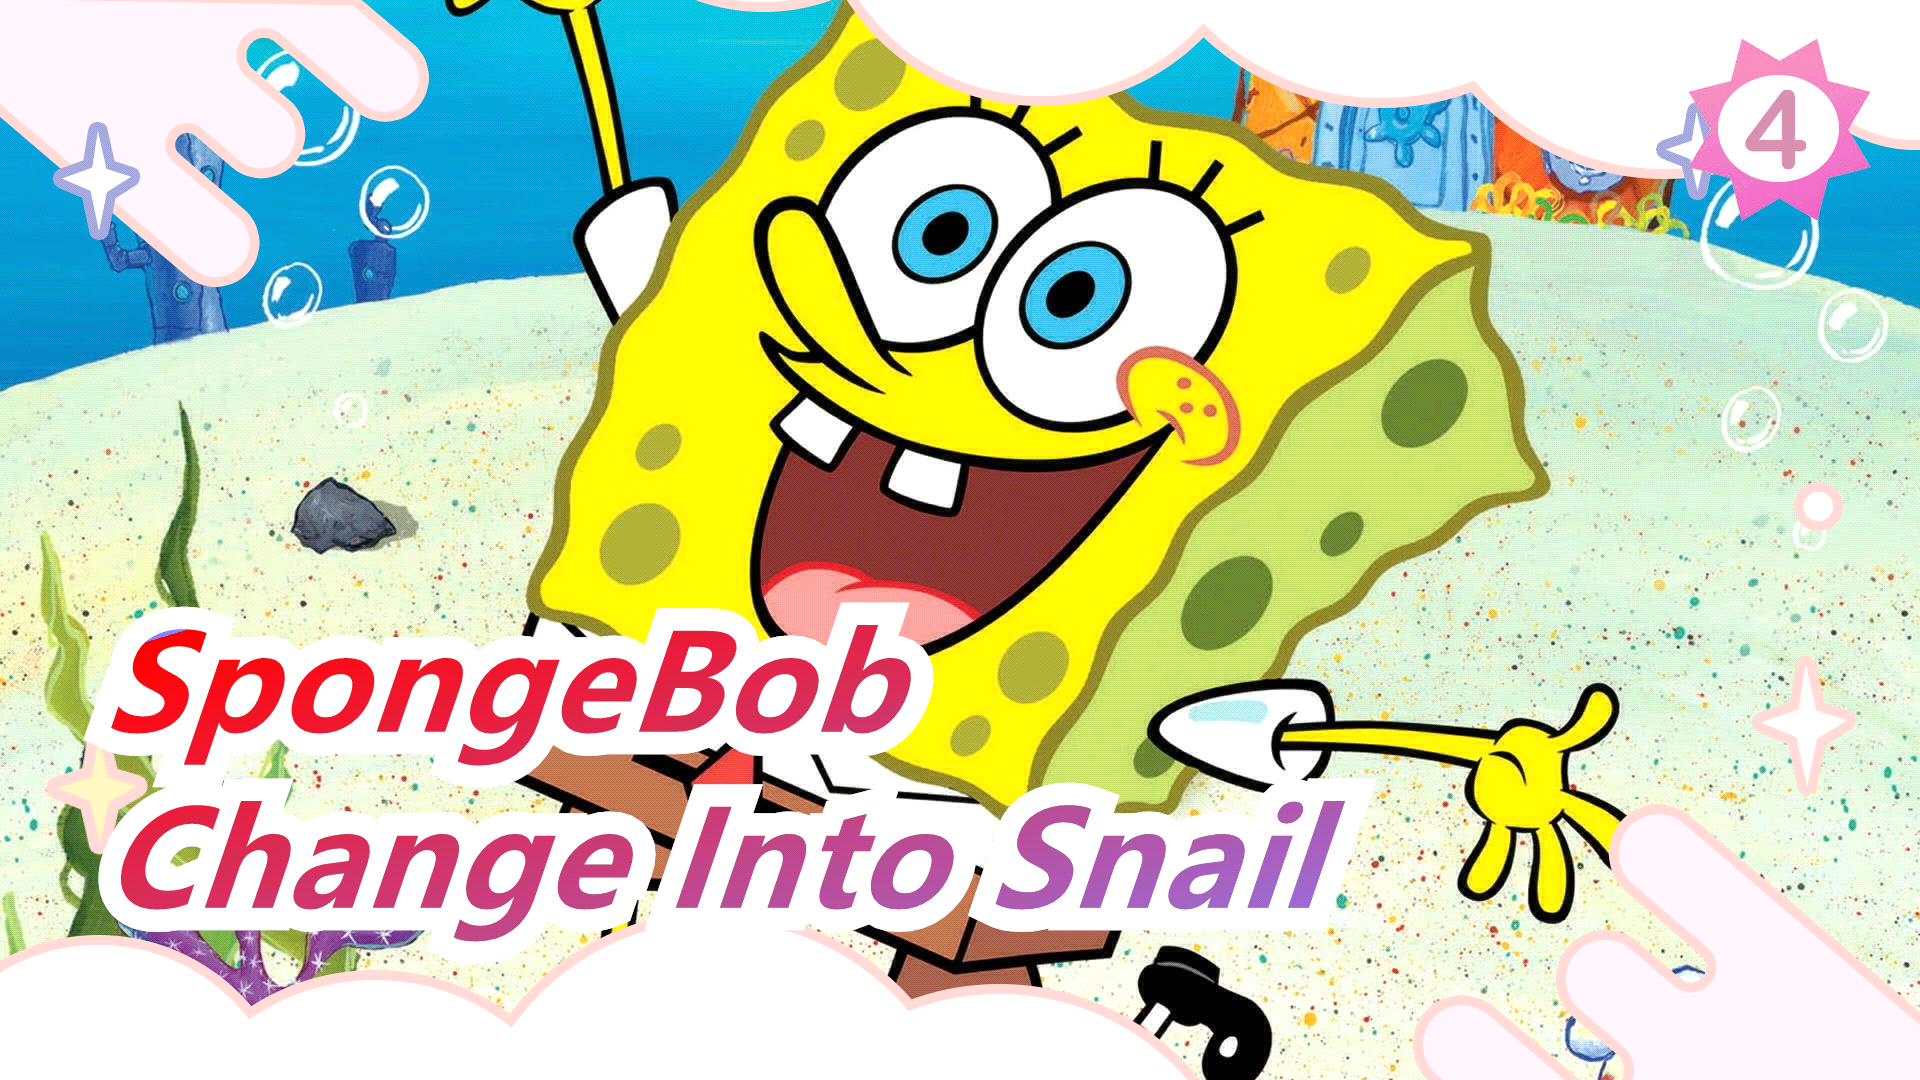 web Desert do an experiment SpongeBob] Change Into Snail_D - Bilibili